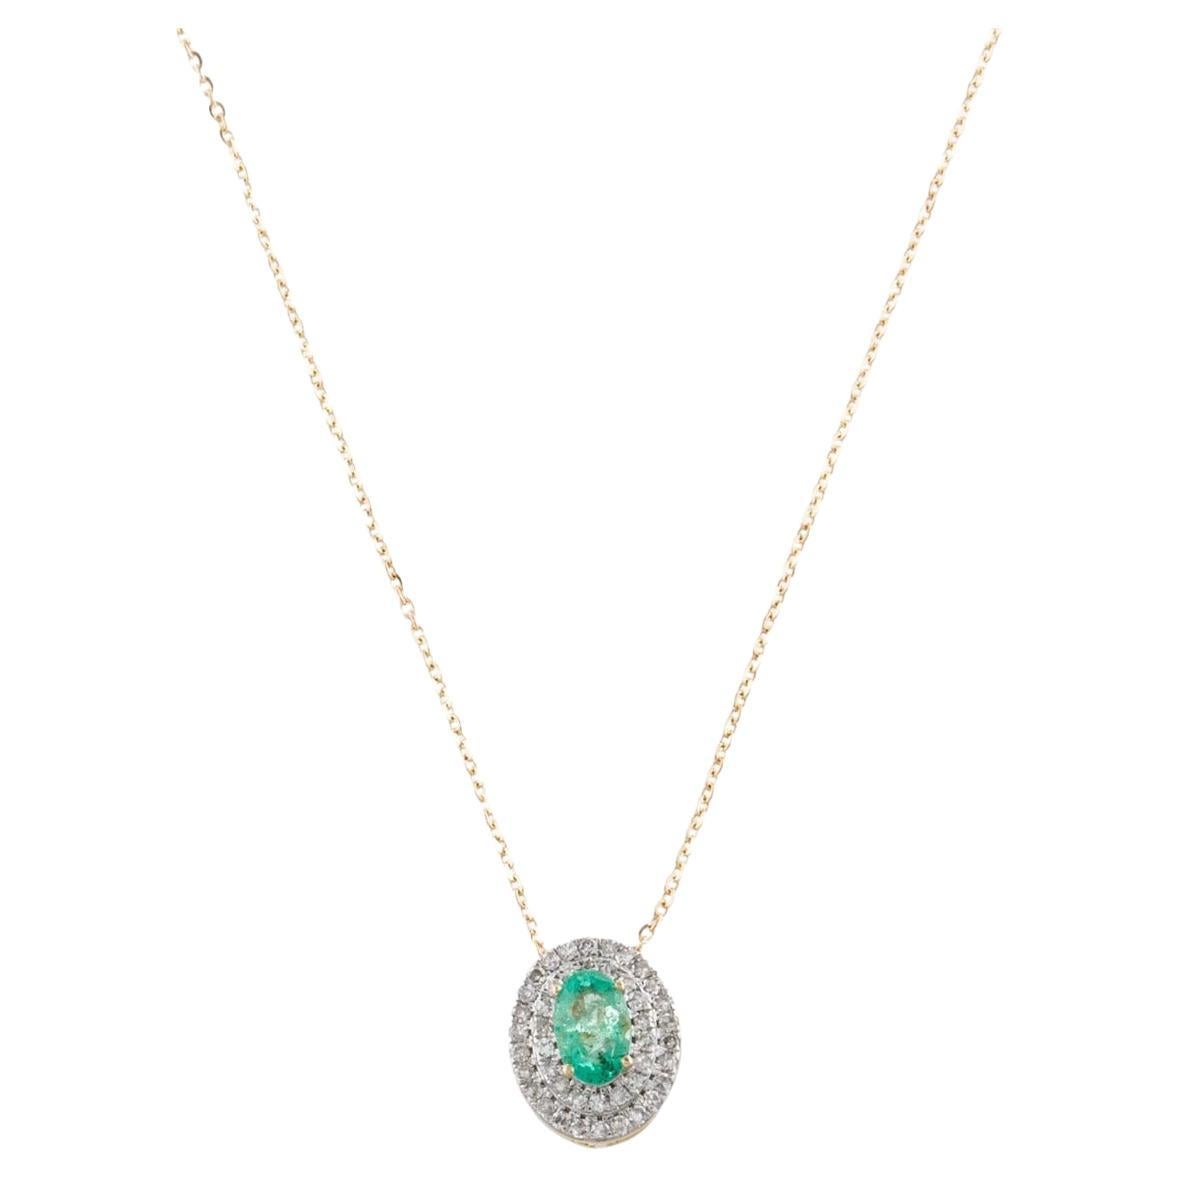 14K Smaragd-Diamant-Anhänger-Halskette im Vintage-Stil - Schmuck im Vintage-Stil, Statement-Stil